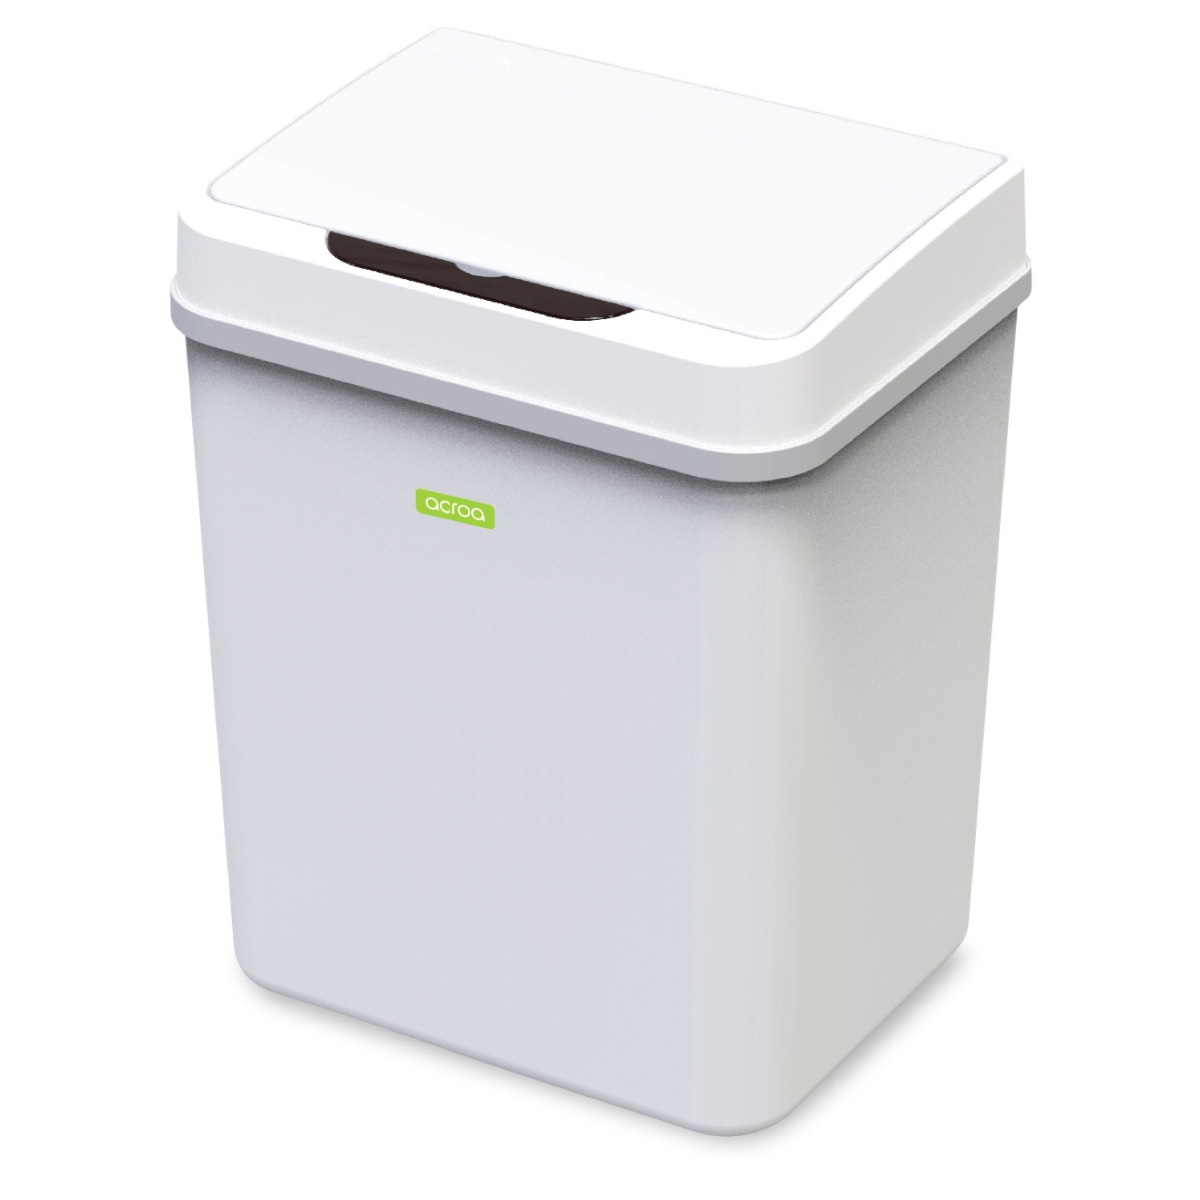 センサー式自動開閉ゴミ箱 acroa 9L 生活防水タイプ メーカー保証付き